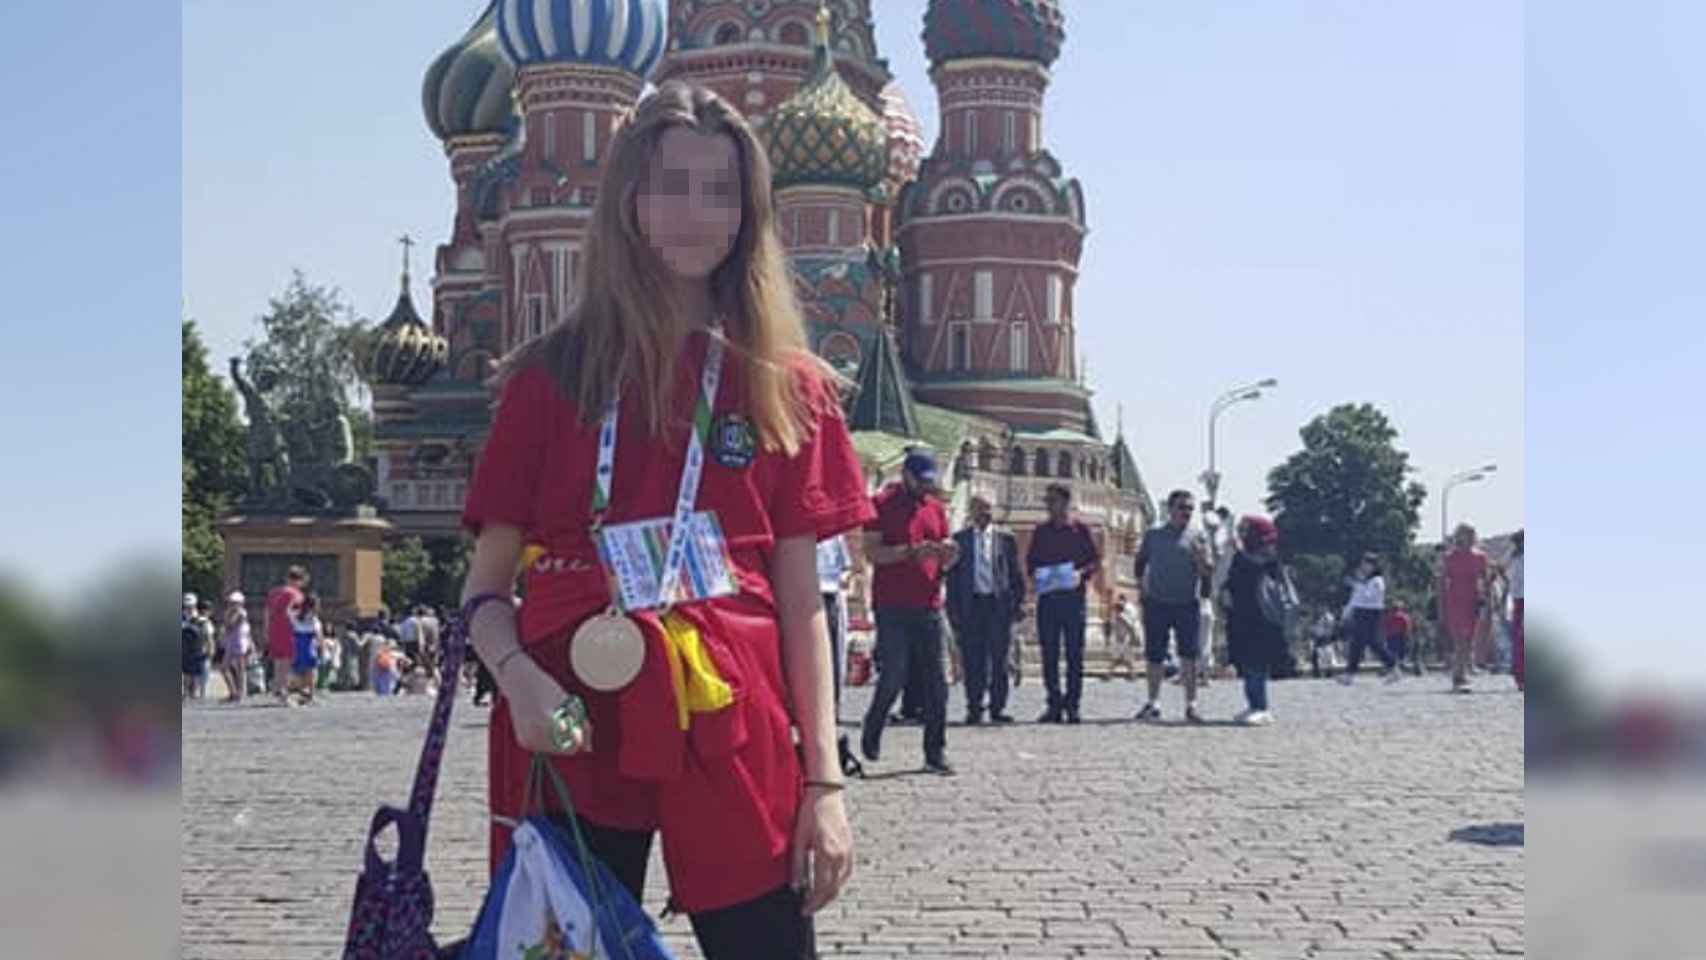 Karoline, la víctima del asesinato, posa con su medalla tras haber asistido a una competición de natación en Moscú.